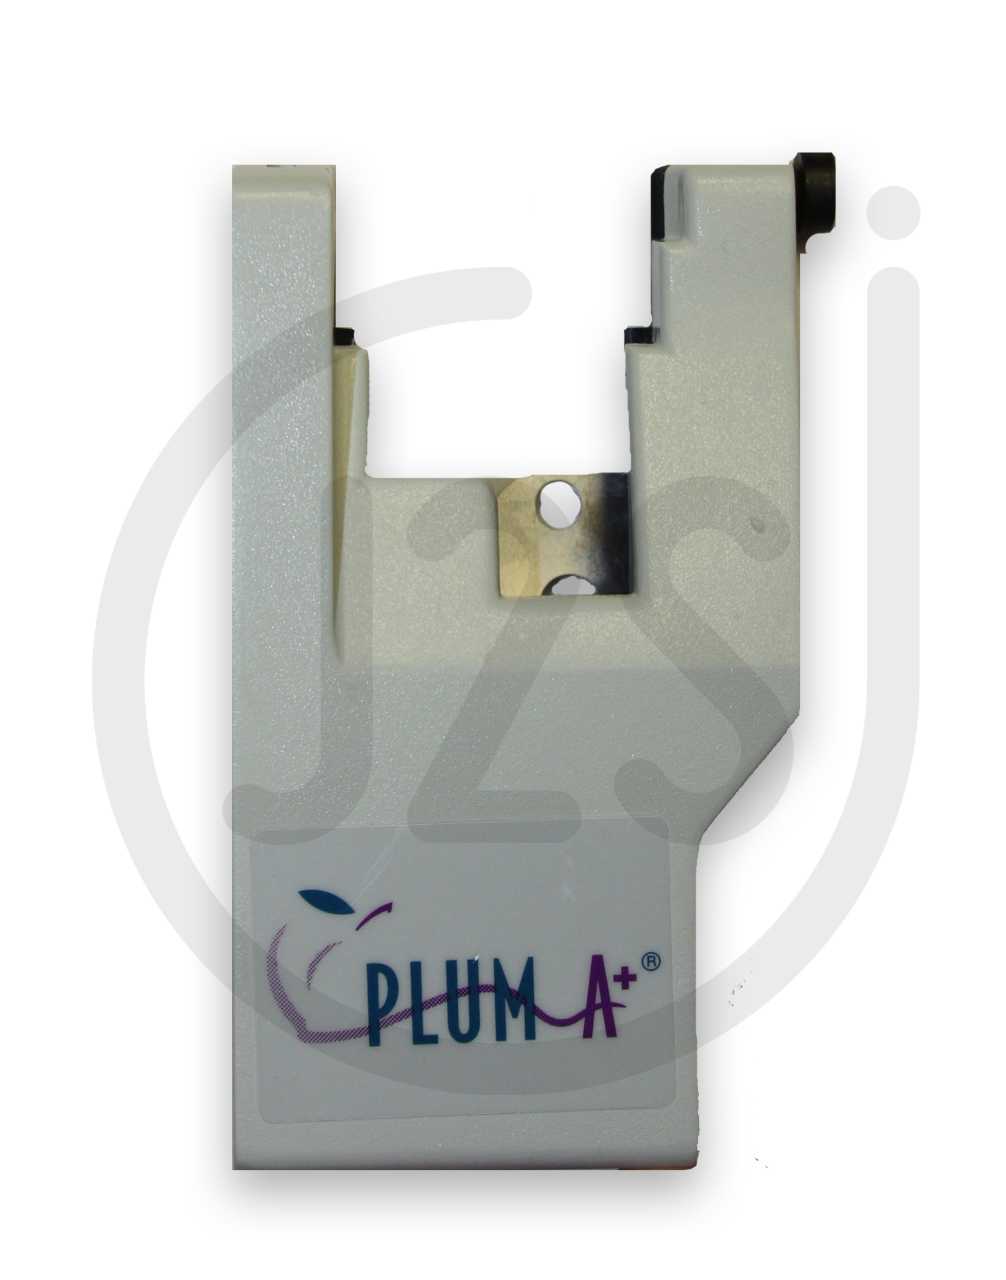 Plum A+ Cassette Door Image